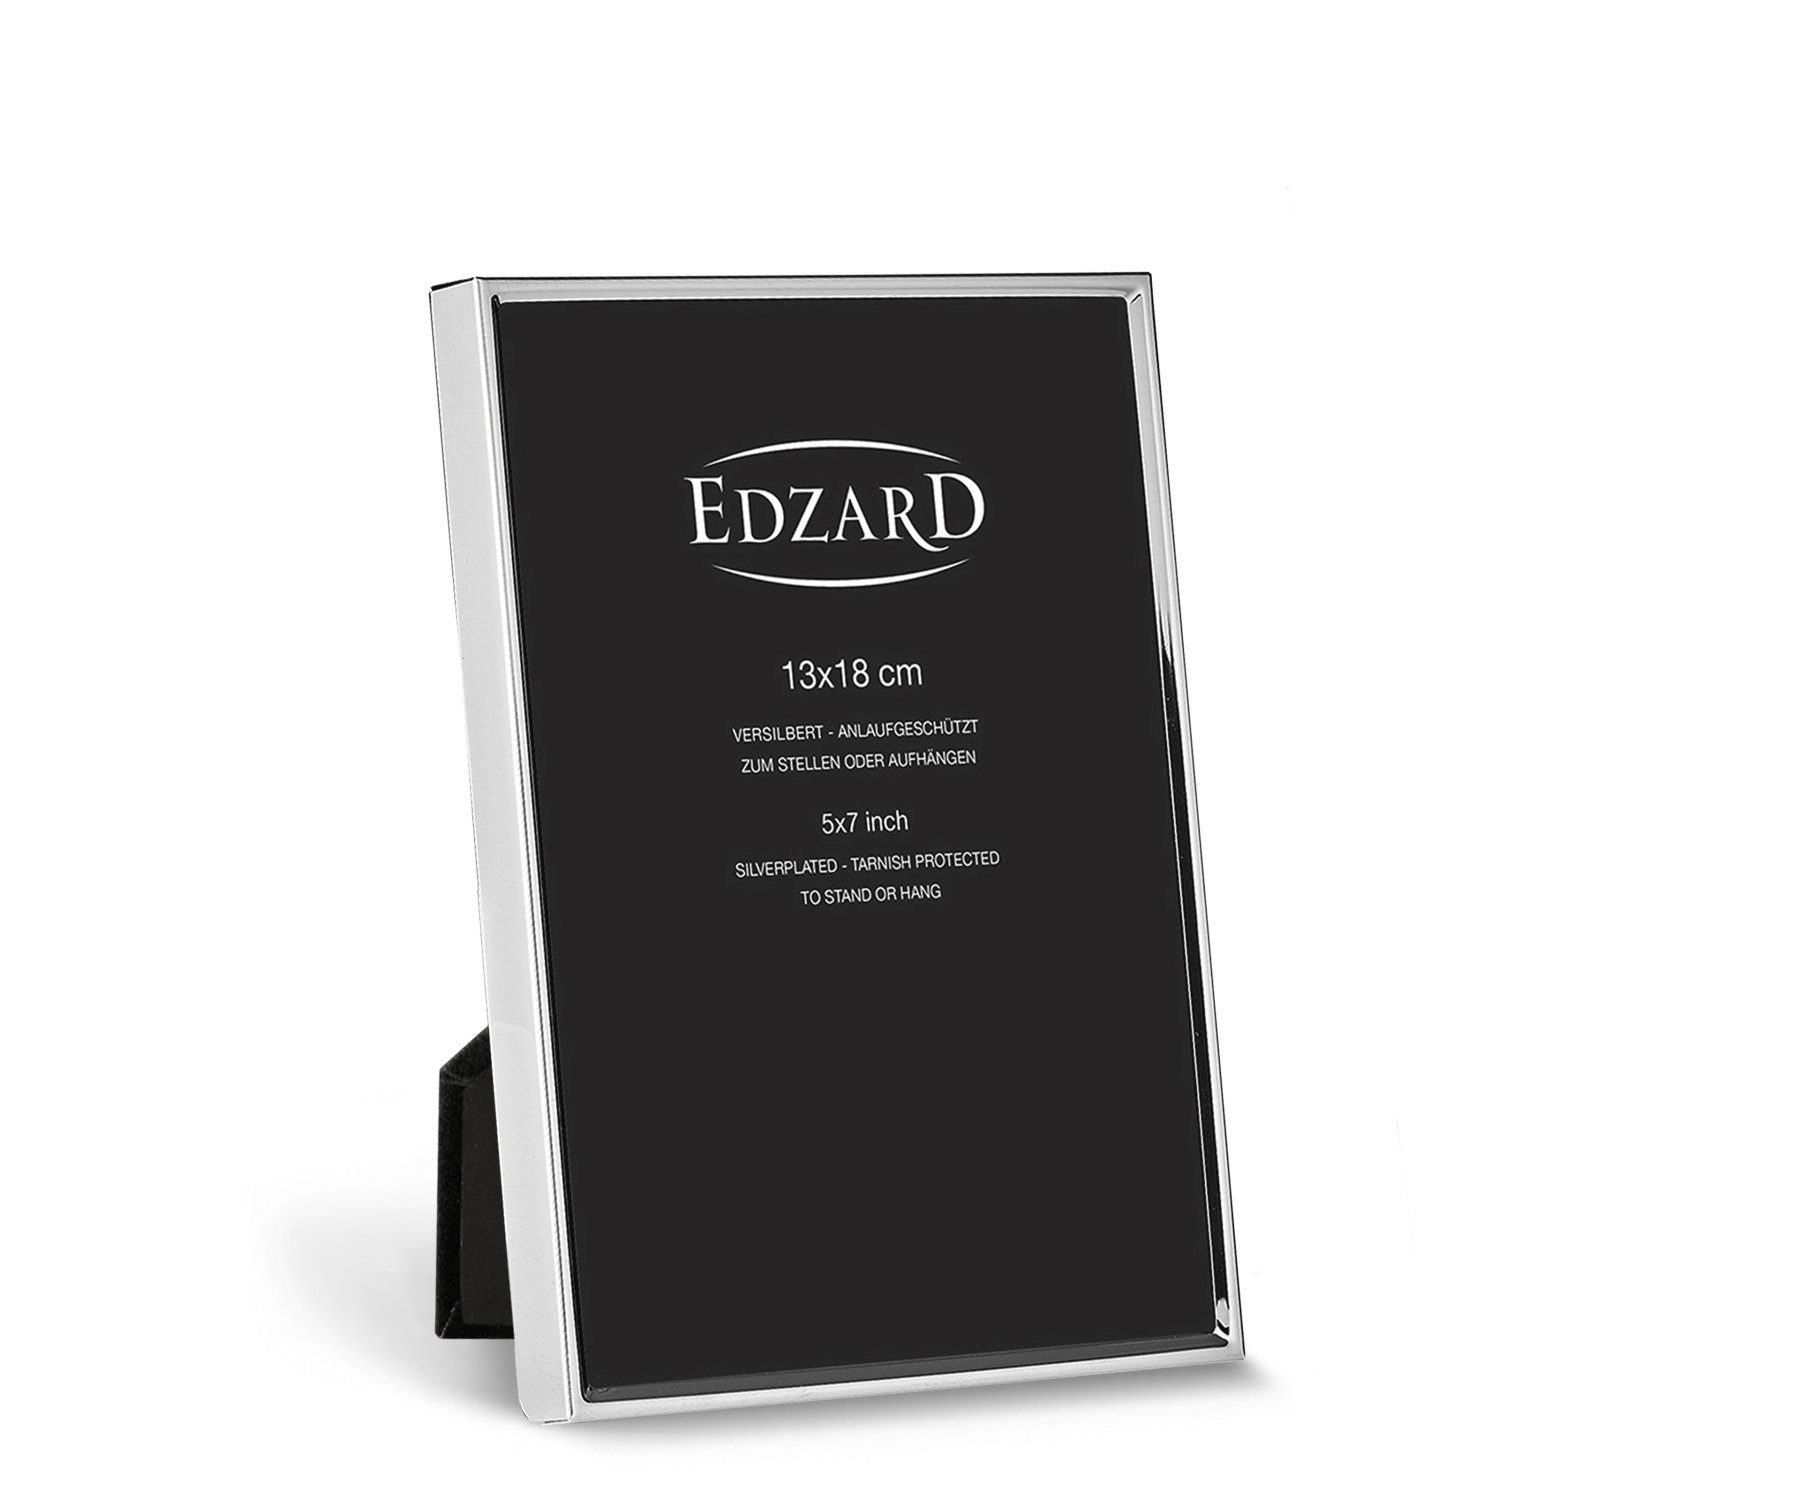 EDZARD Bilderrahmen Foto anlaufgeschützt, für 13x18 und cm , versilbert